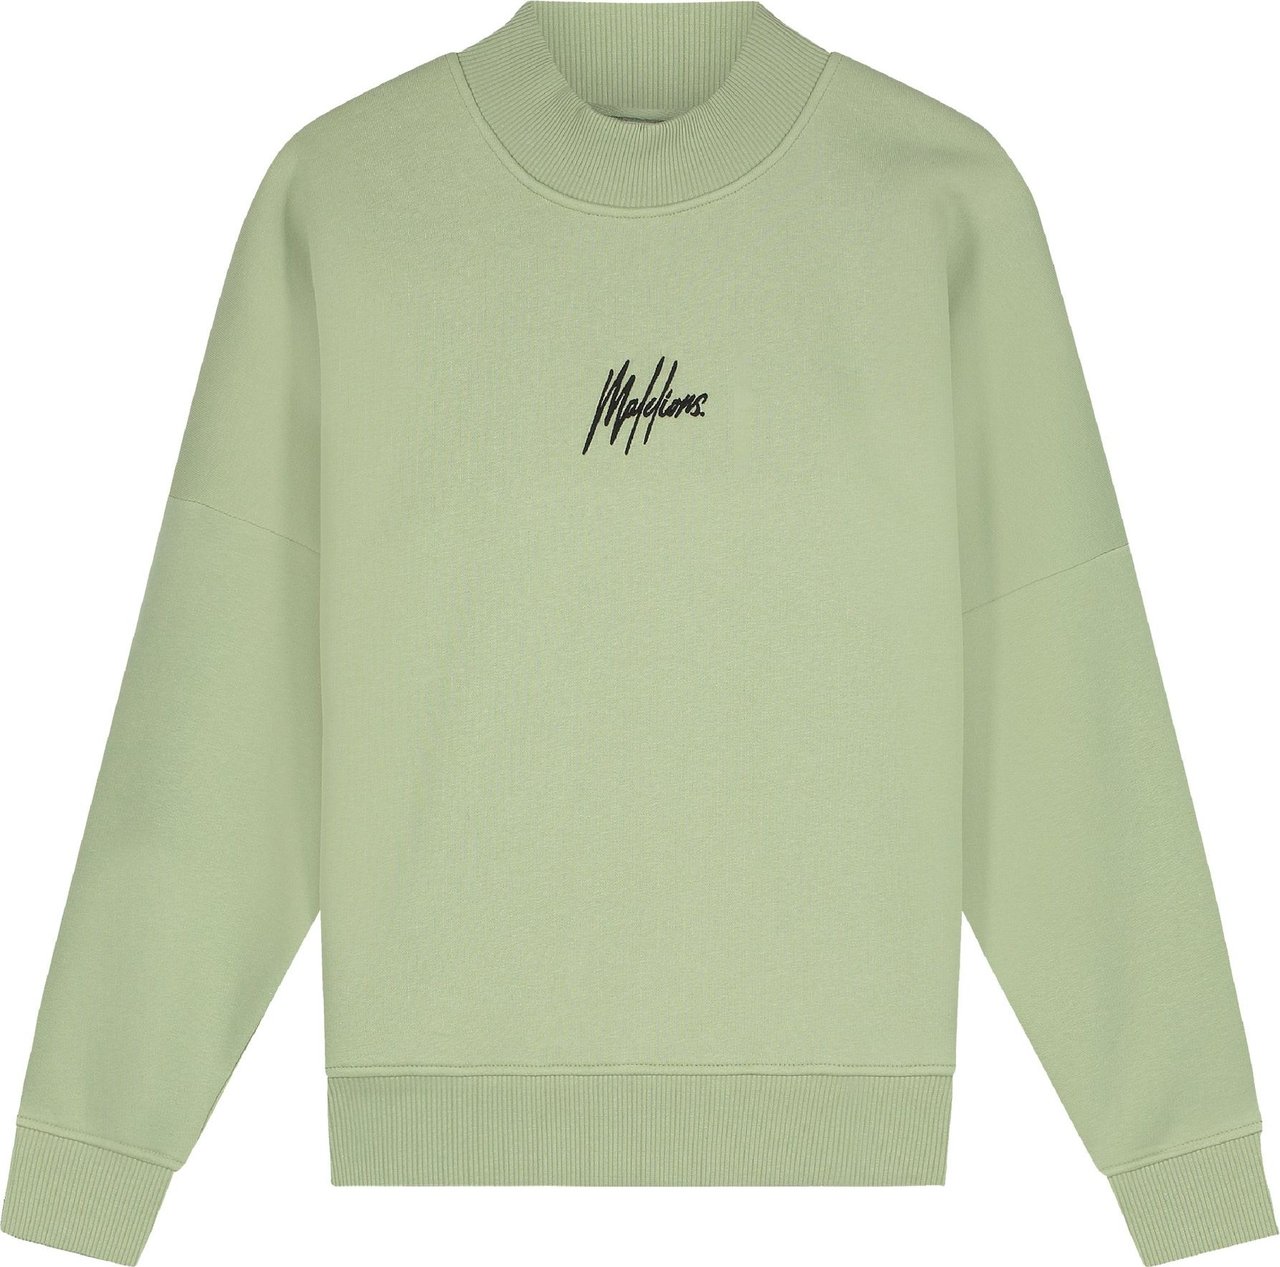 Malelions Women Brand Sweater - Sage Green Groen